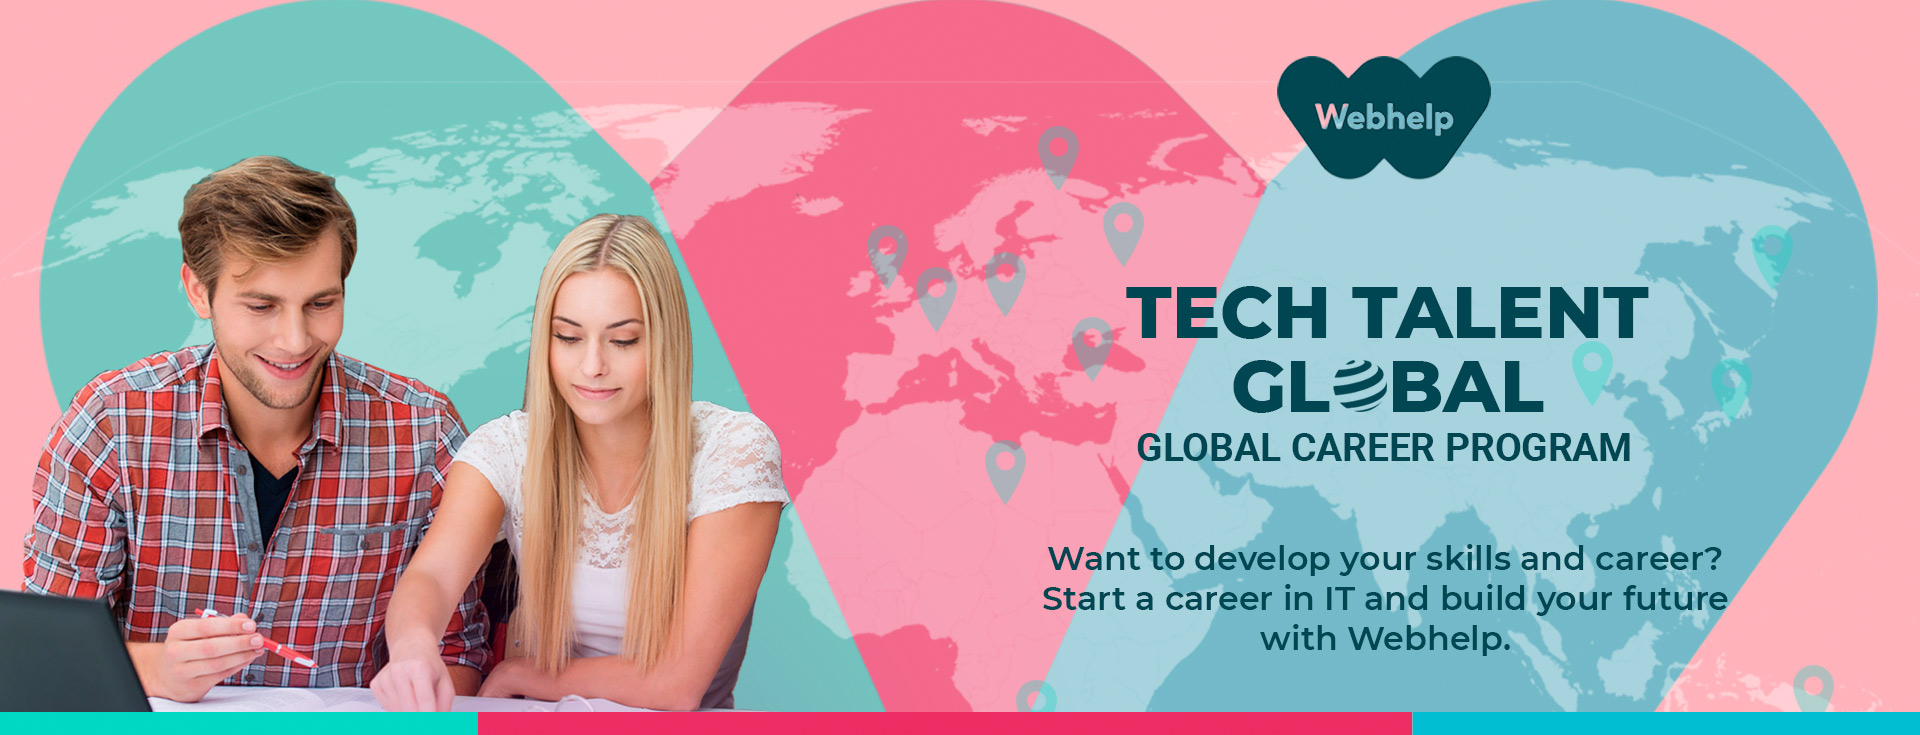 Webhelp Tech Talent Global